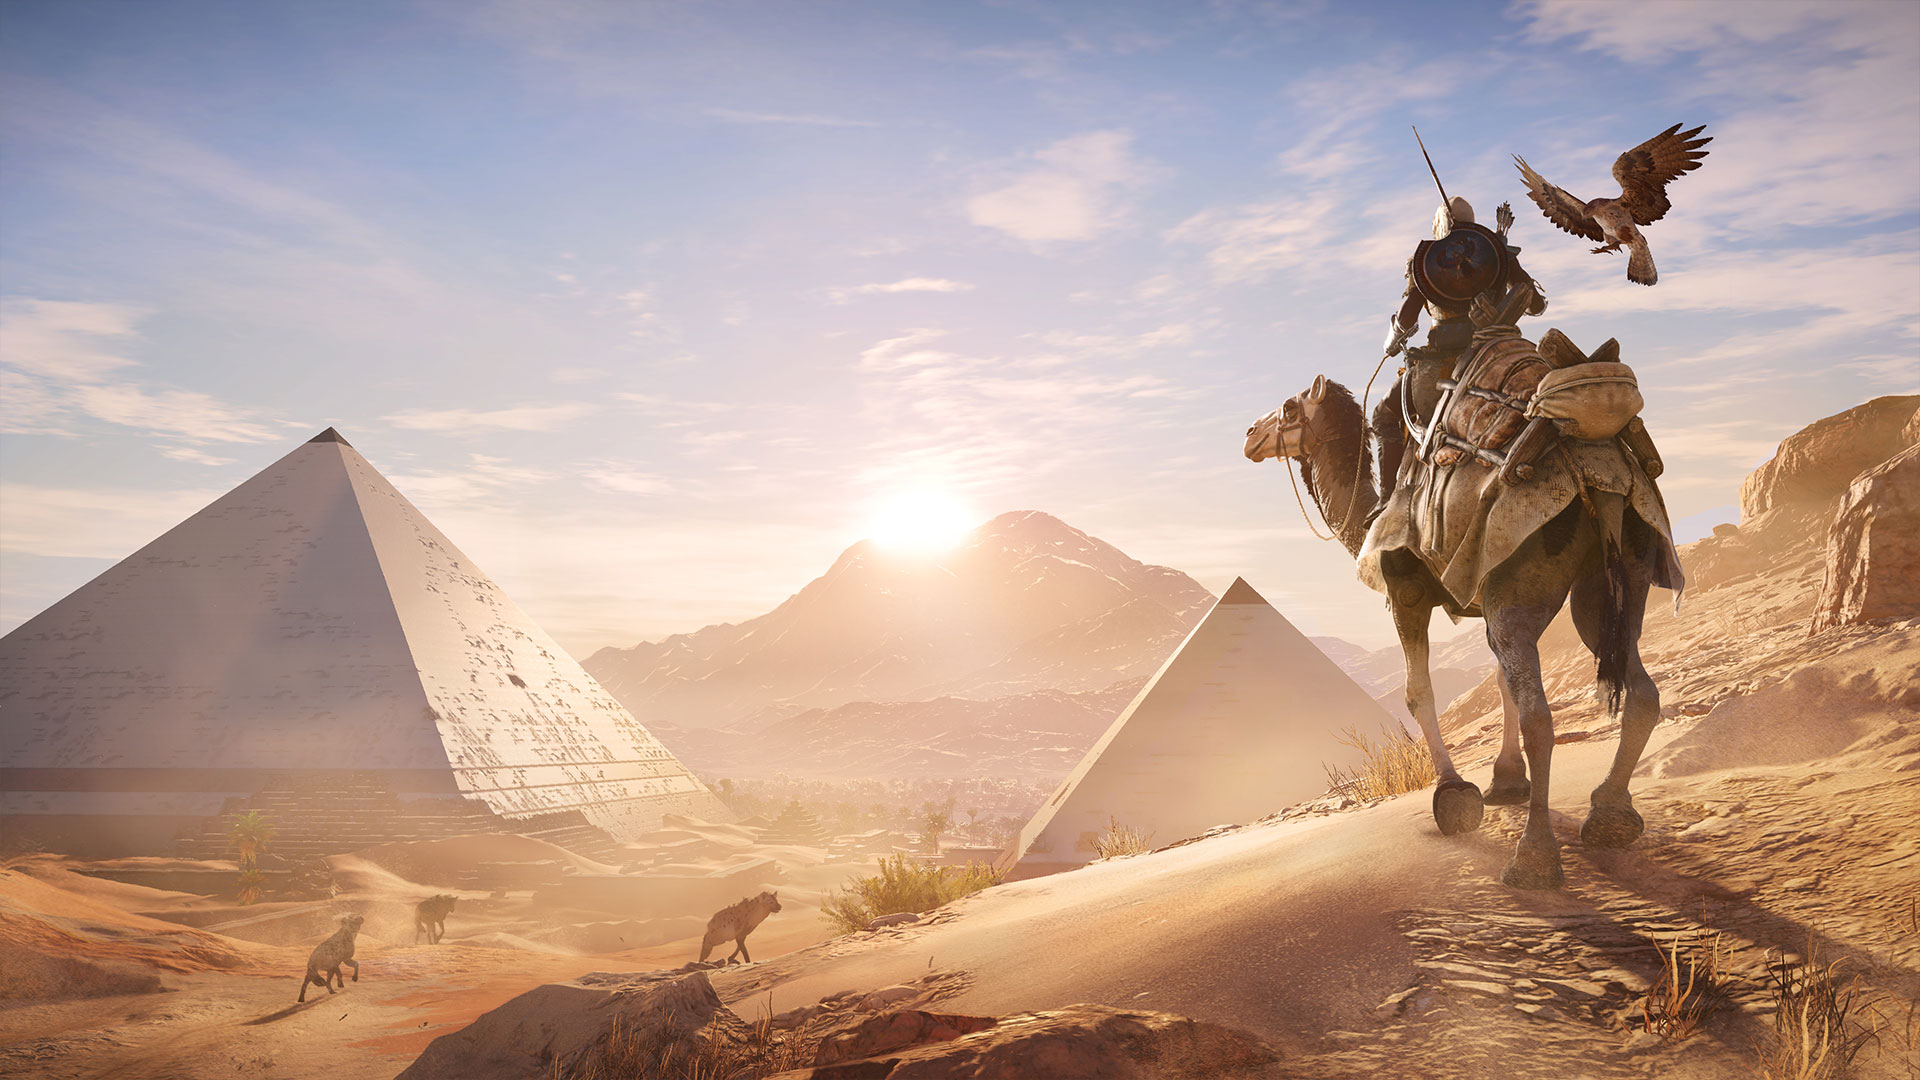 Immagine pubblicata in relazione al seguente contenuto: Gameplay trailer in 4K e screenshots in Full HD di Assassin's Creed Origins | Nome immagine: news26543_Assassin-s-Creed-Origins-Screenshot_2.jpg